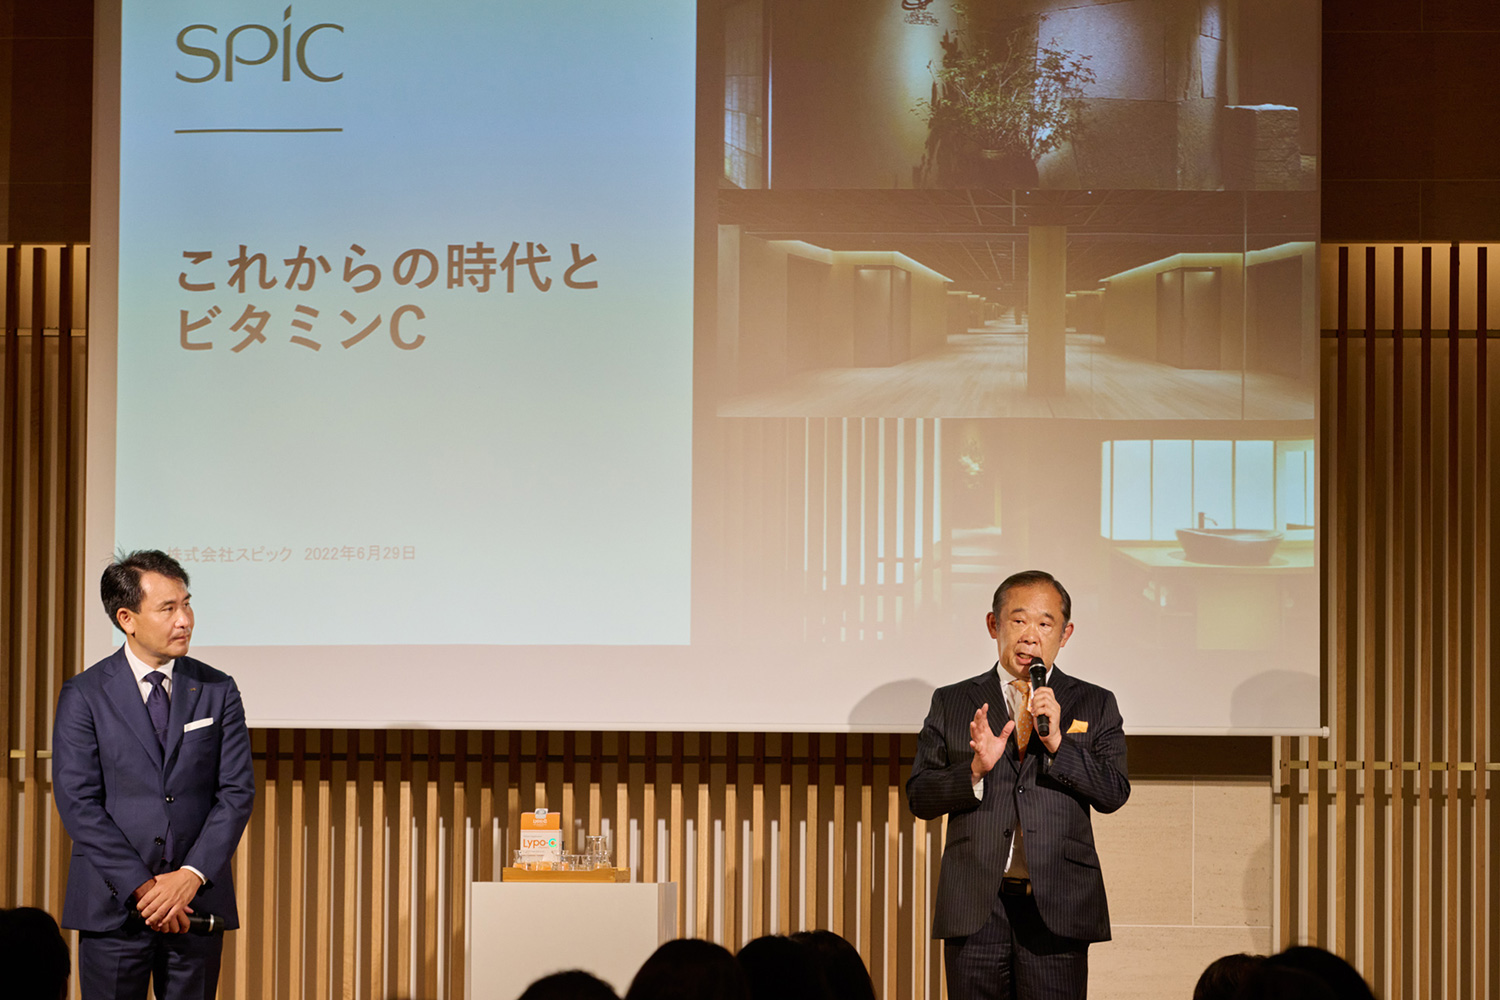 右が柳澤厚生先生、左はSPIC社長の芝田崇行さんです。「Lypo-C」の開発は2010年頃に始まりました。